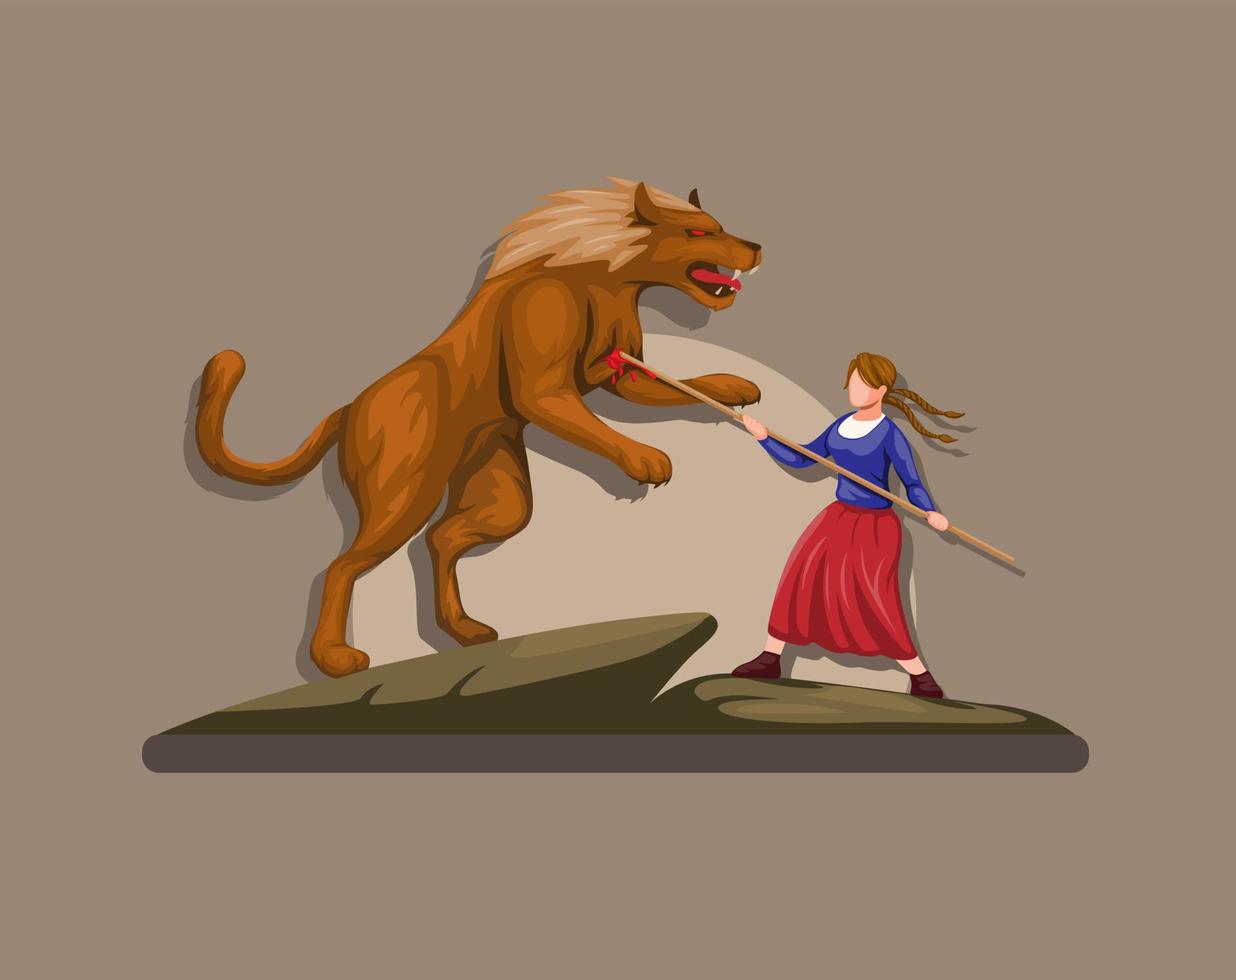 marie jeanne met gevaudan monster weerwolf mythologie schepsel uit frankrijk europa illustratie vector